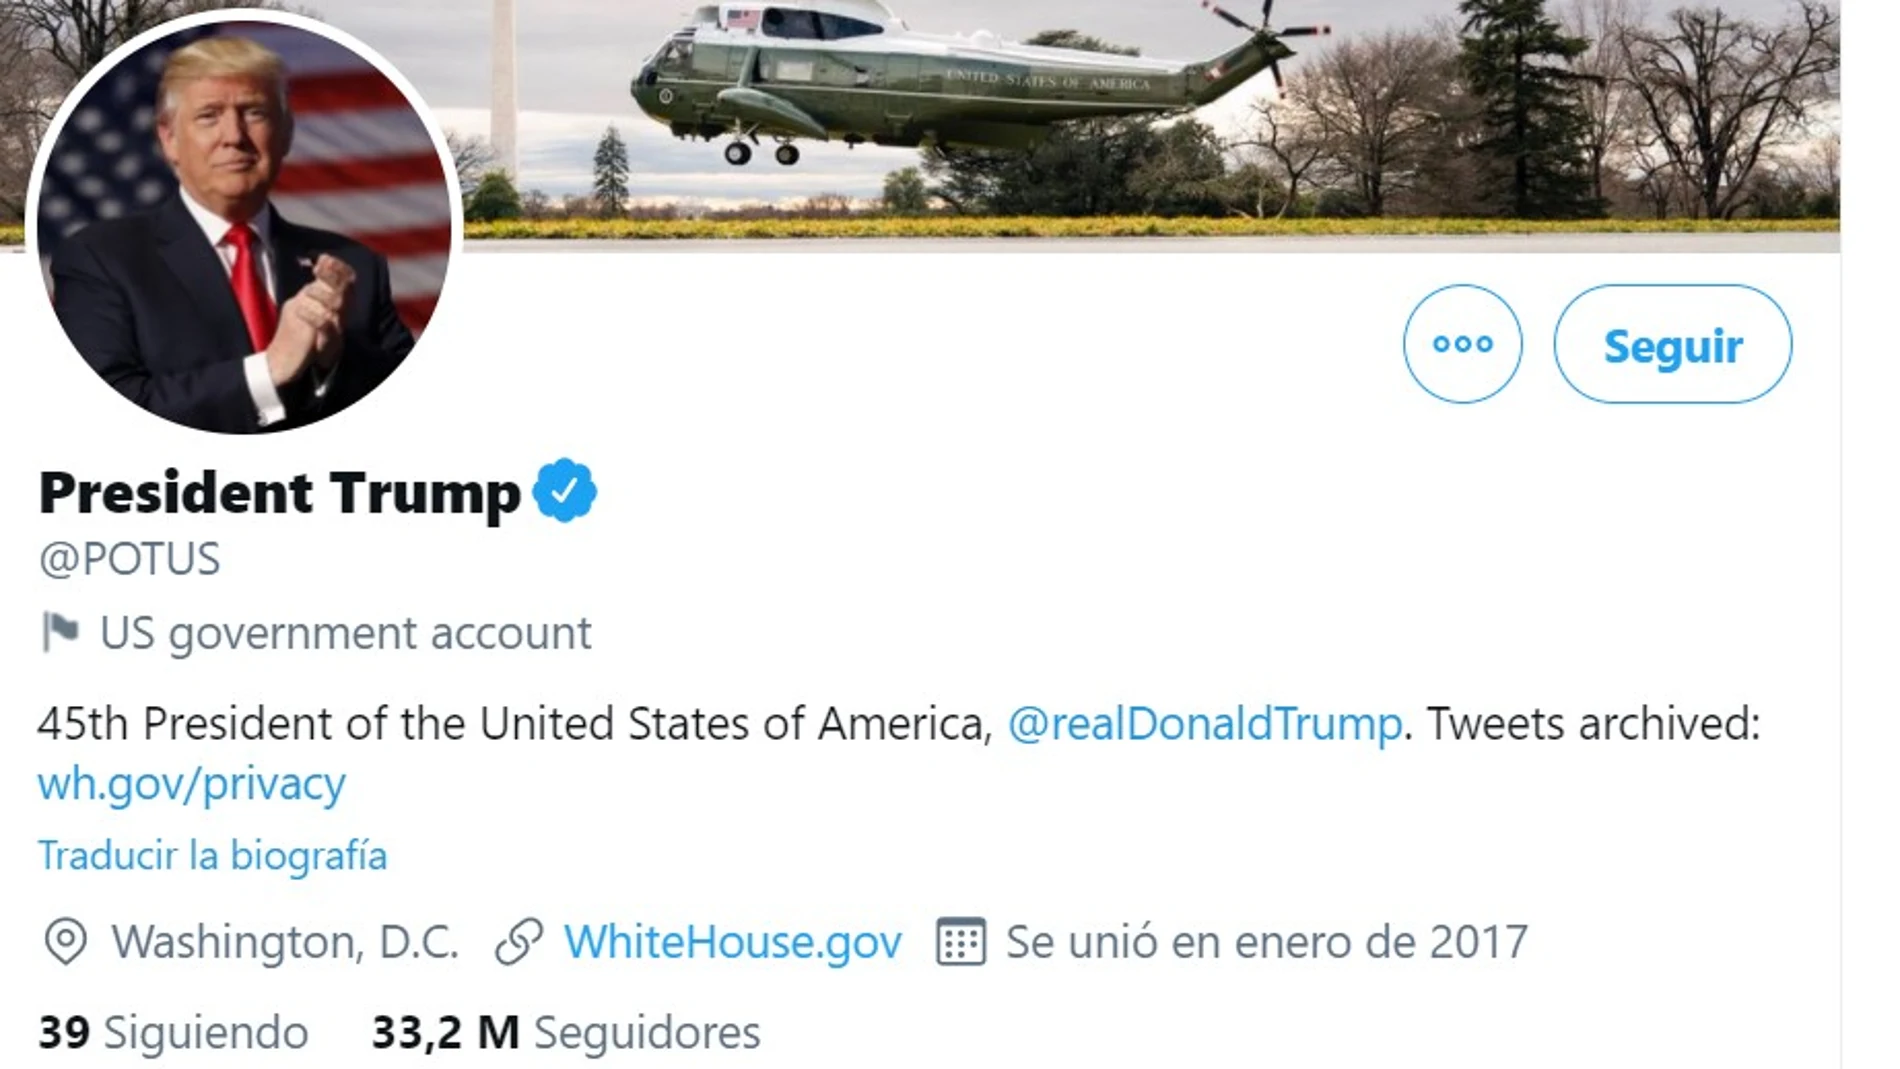 @POTUS, la cuenta de Twitter del presidente de EE UU